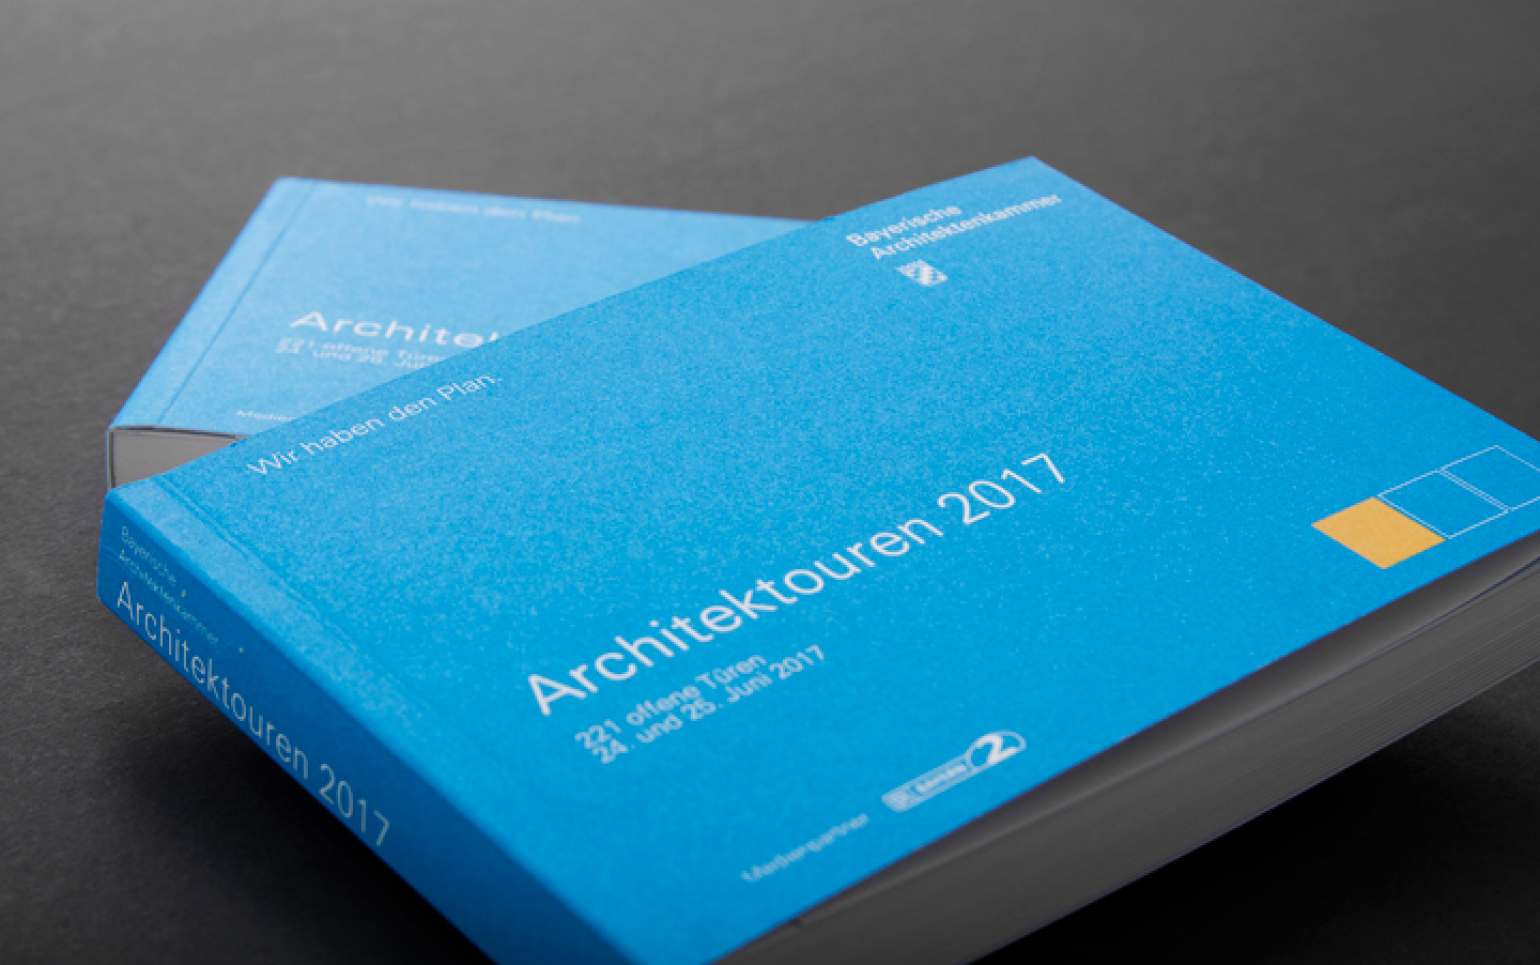 fritsch-tschaidse_architekten_booklet